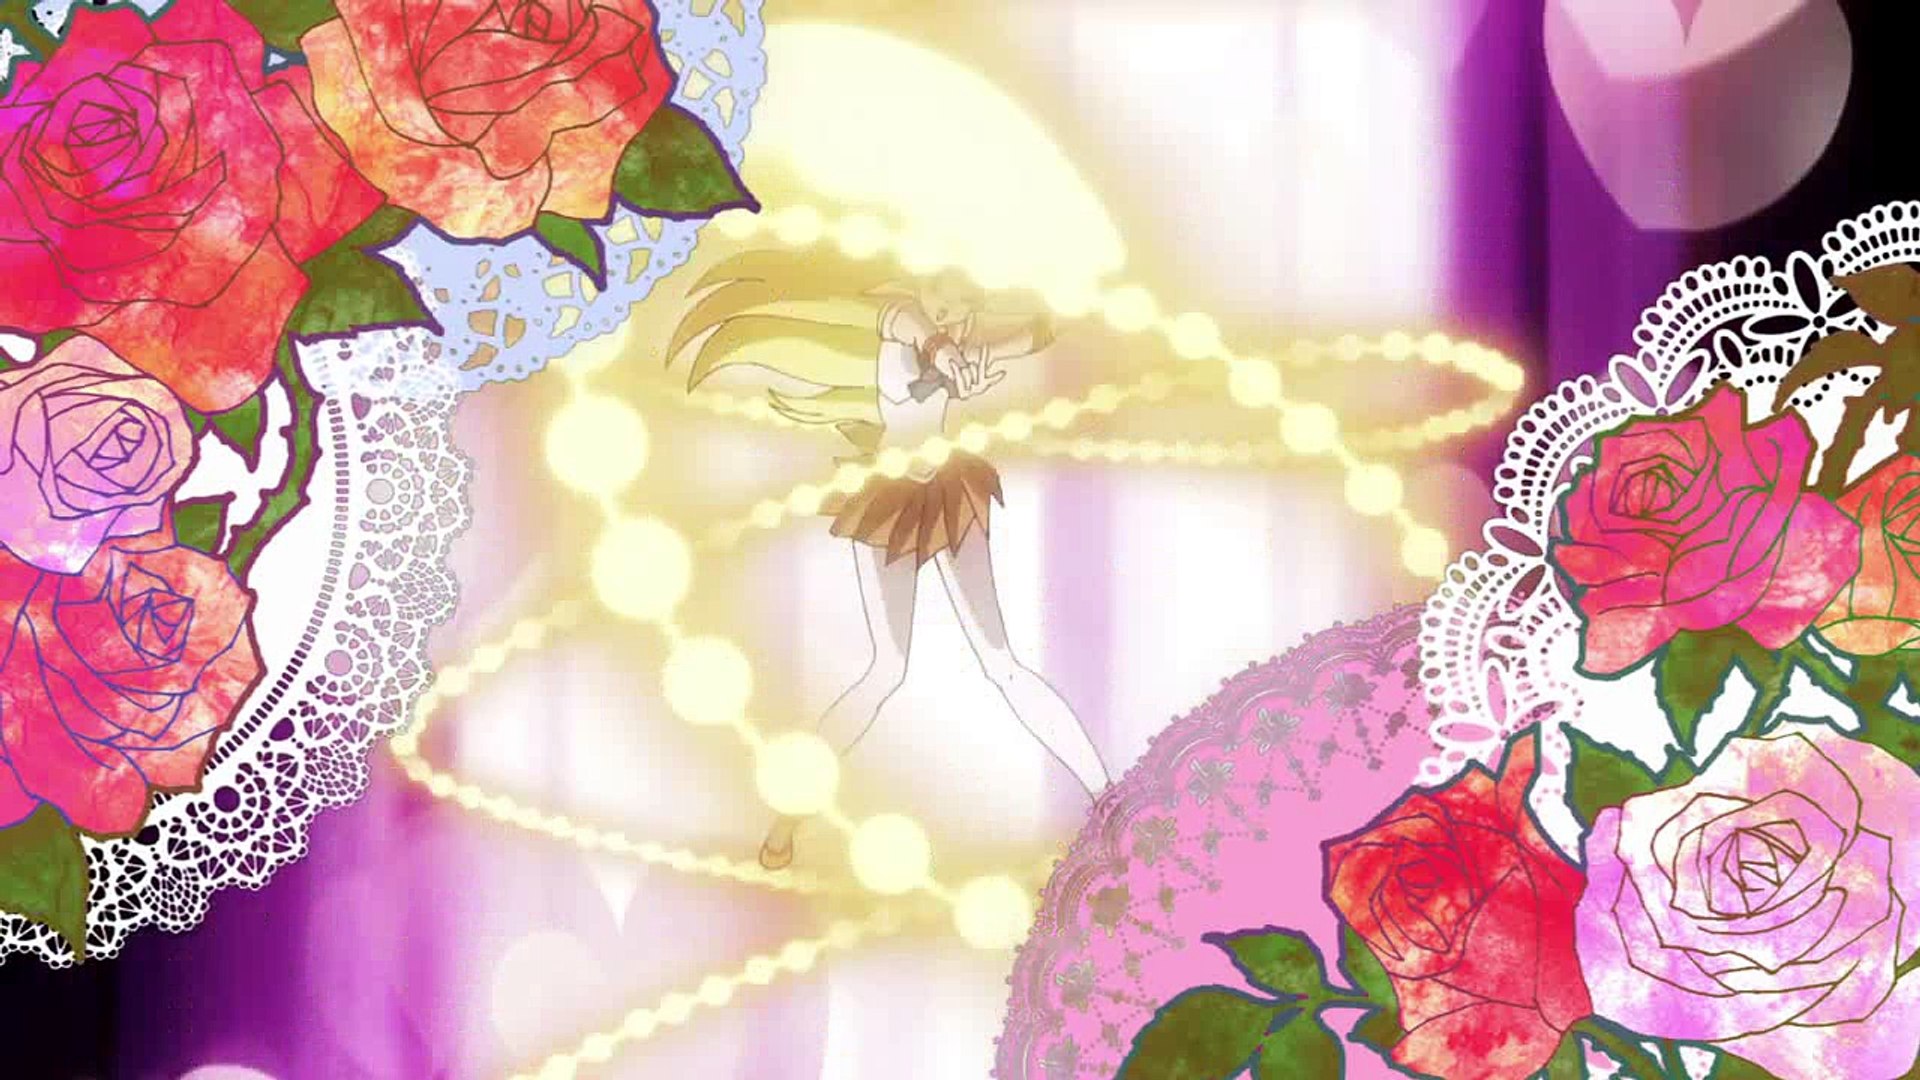 Sailor Moon Crystal temporada 3 tiene nuevo opening y ending